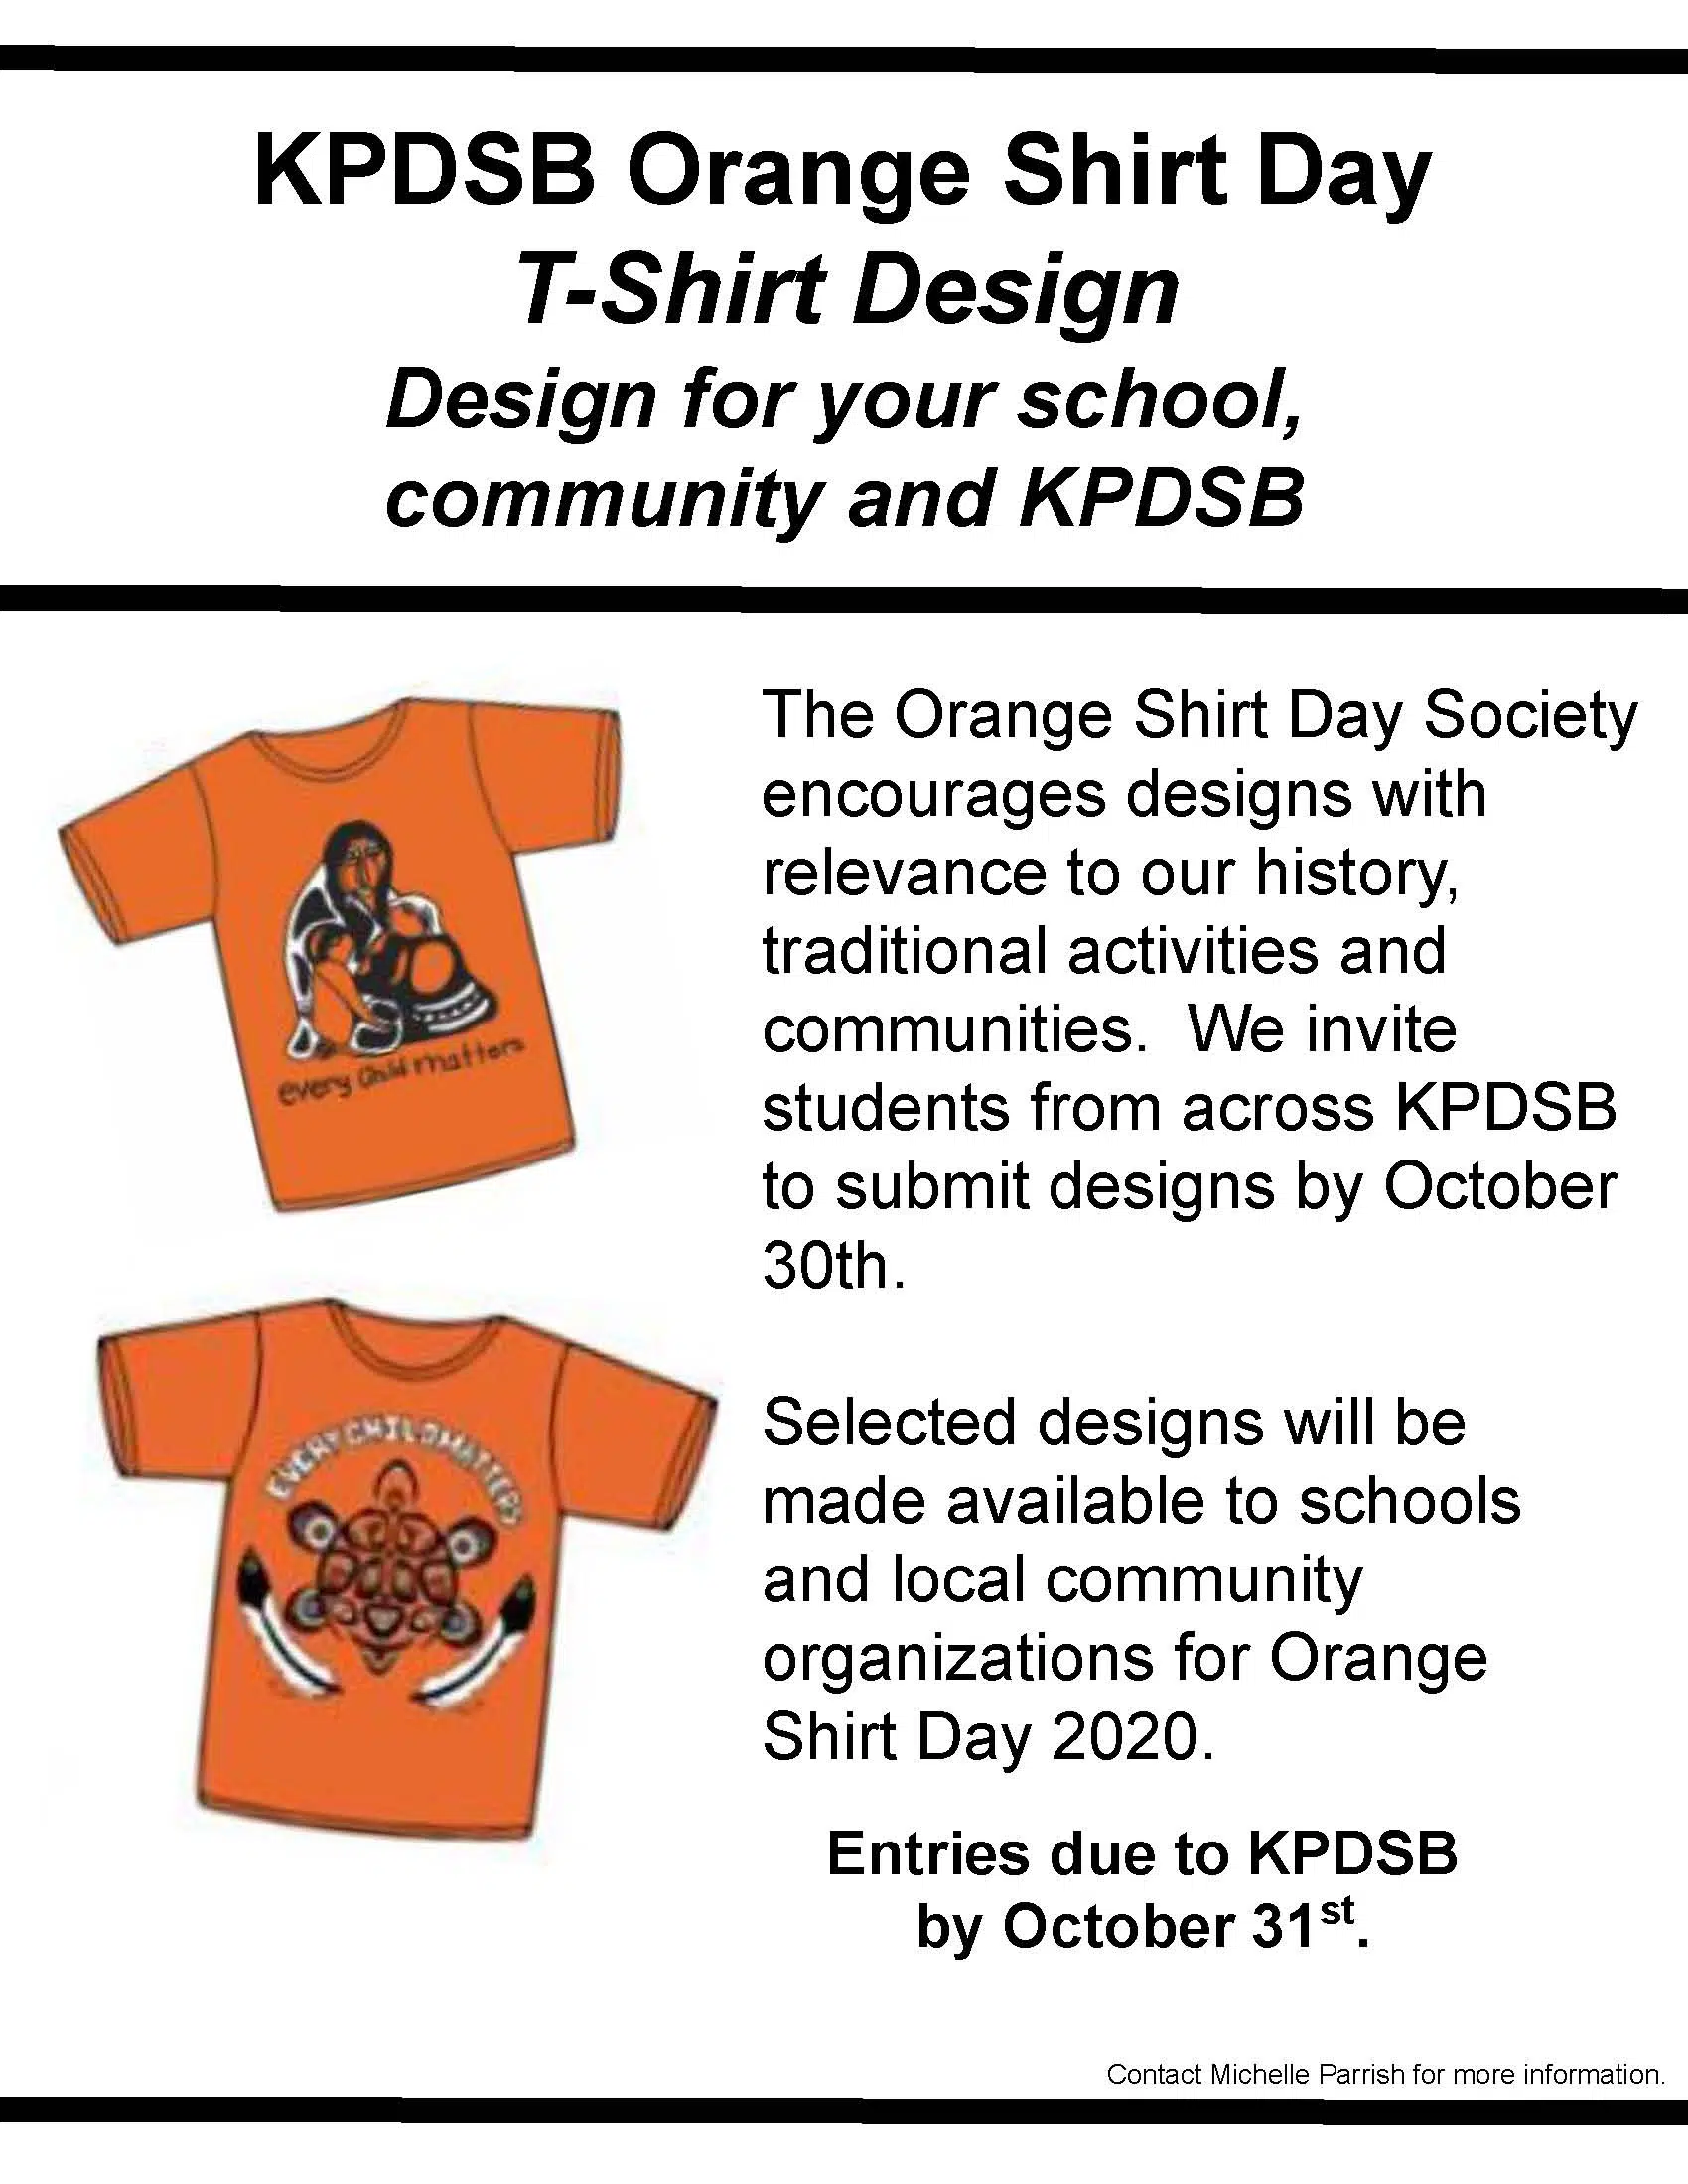 Orange Shirt Day: Hãy cùng chúng tôi nhìn lại Ngày Áo Cam và tìm hiểu về sự kiện ẩn giấu sau đó. Sự kiện mang ý nghĩa lớn đối với cộng đồng địa phương, giúp con người nơi đây nhớ lại quá khứ đau buồn của họ để trân trọng hơn những gì họ có ngày nay. Hãy xem các hình ảnh liên quan để thấy rõ hơn.